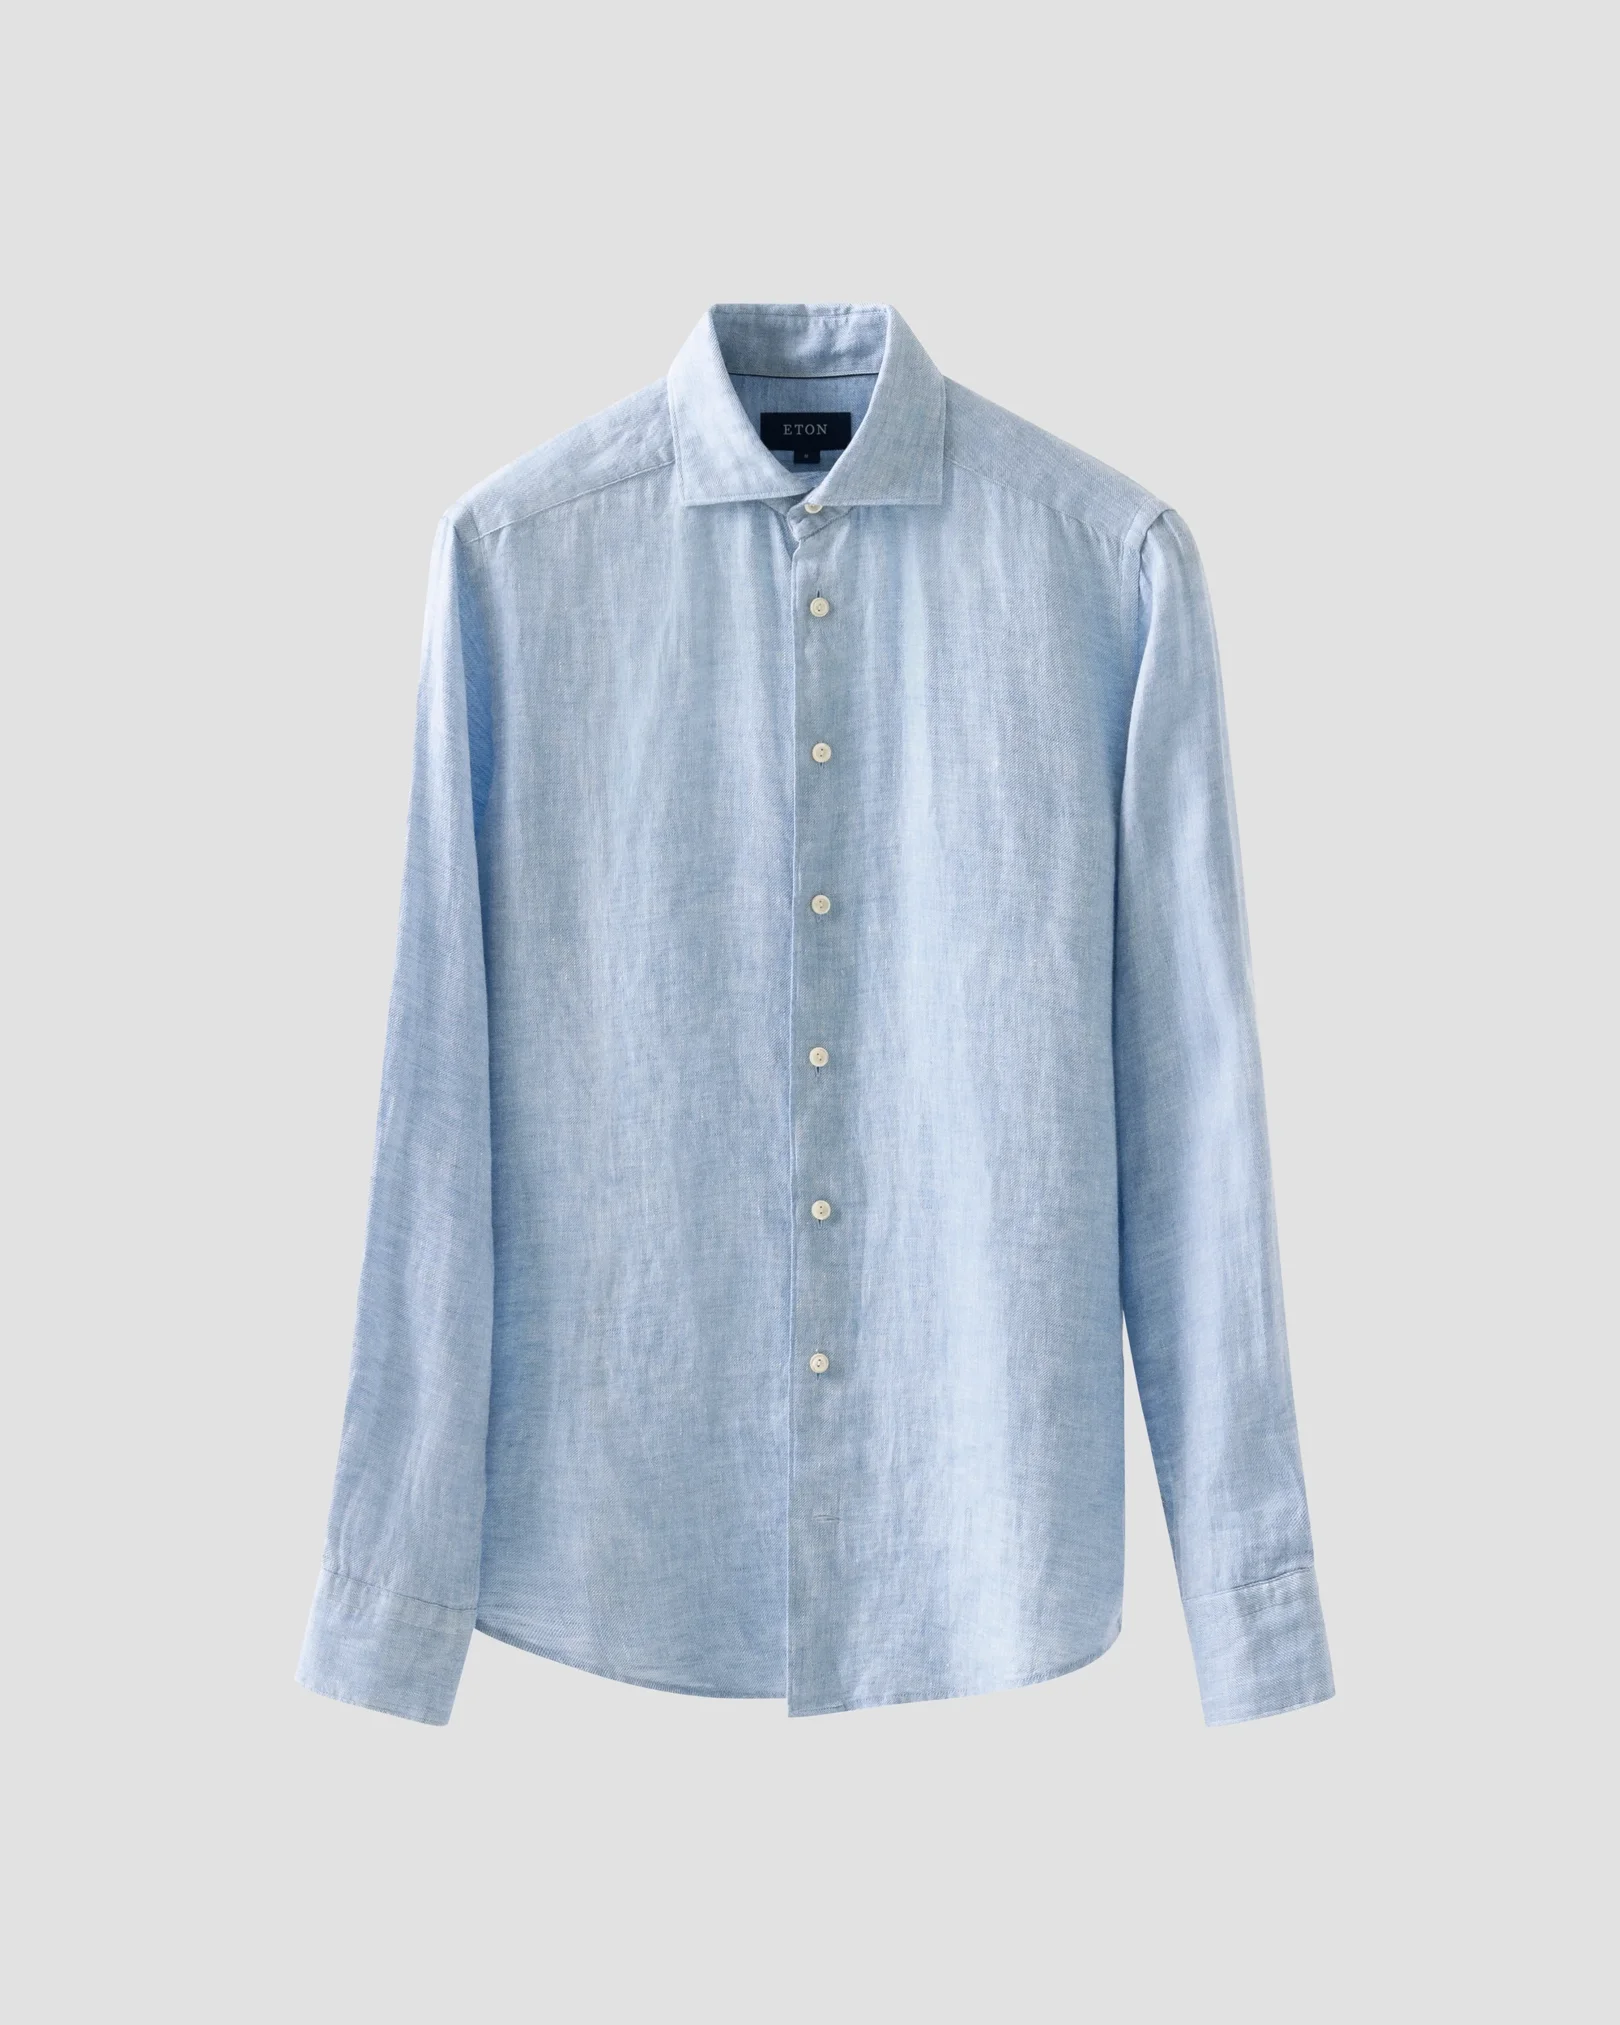 Blue Linen Twill Shirt